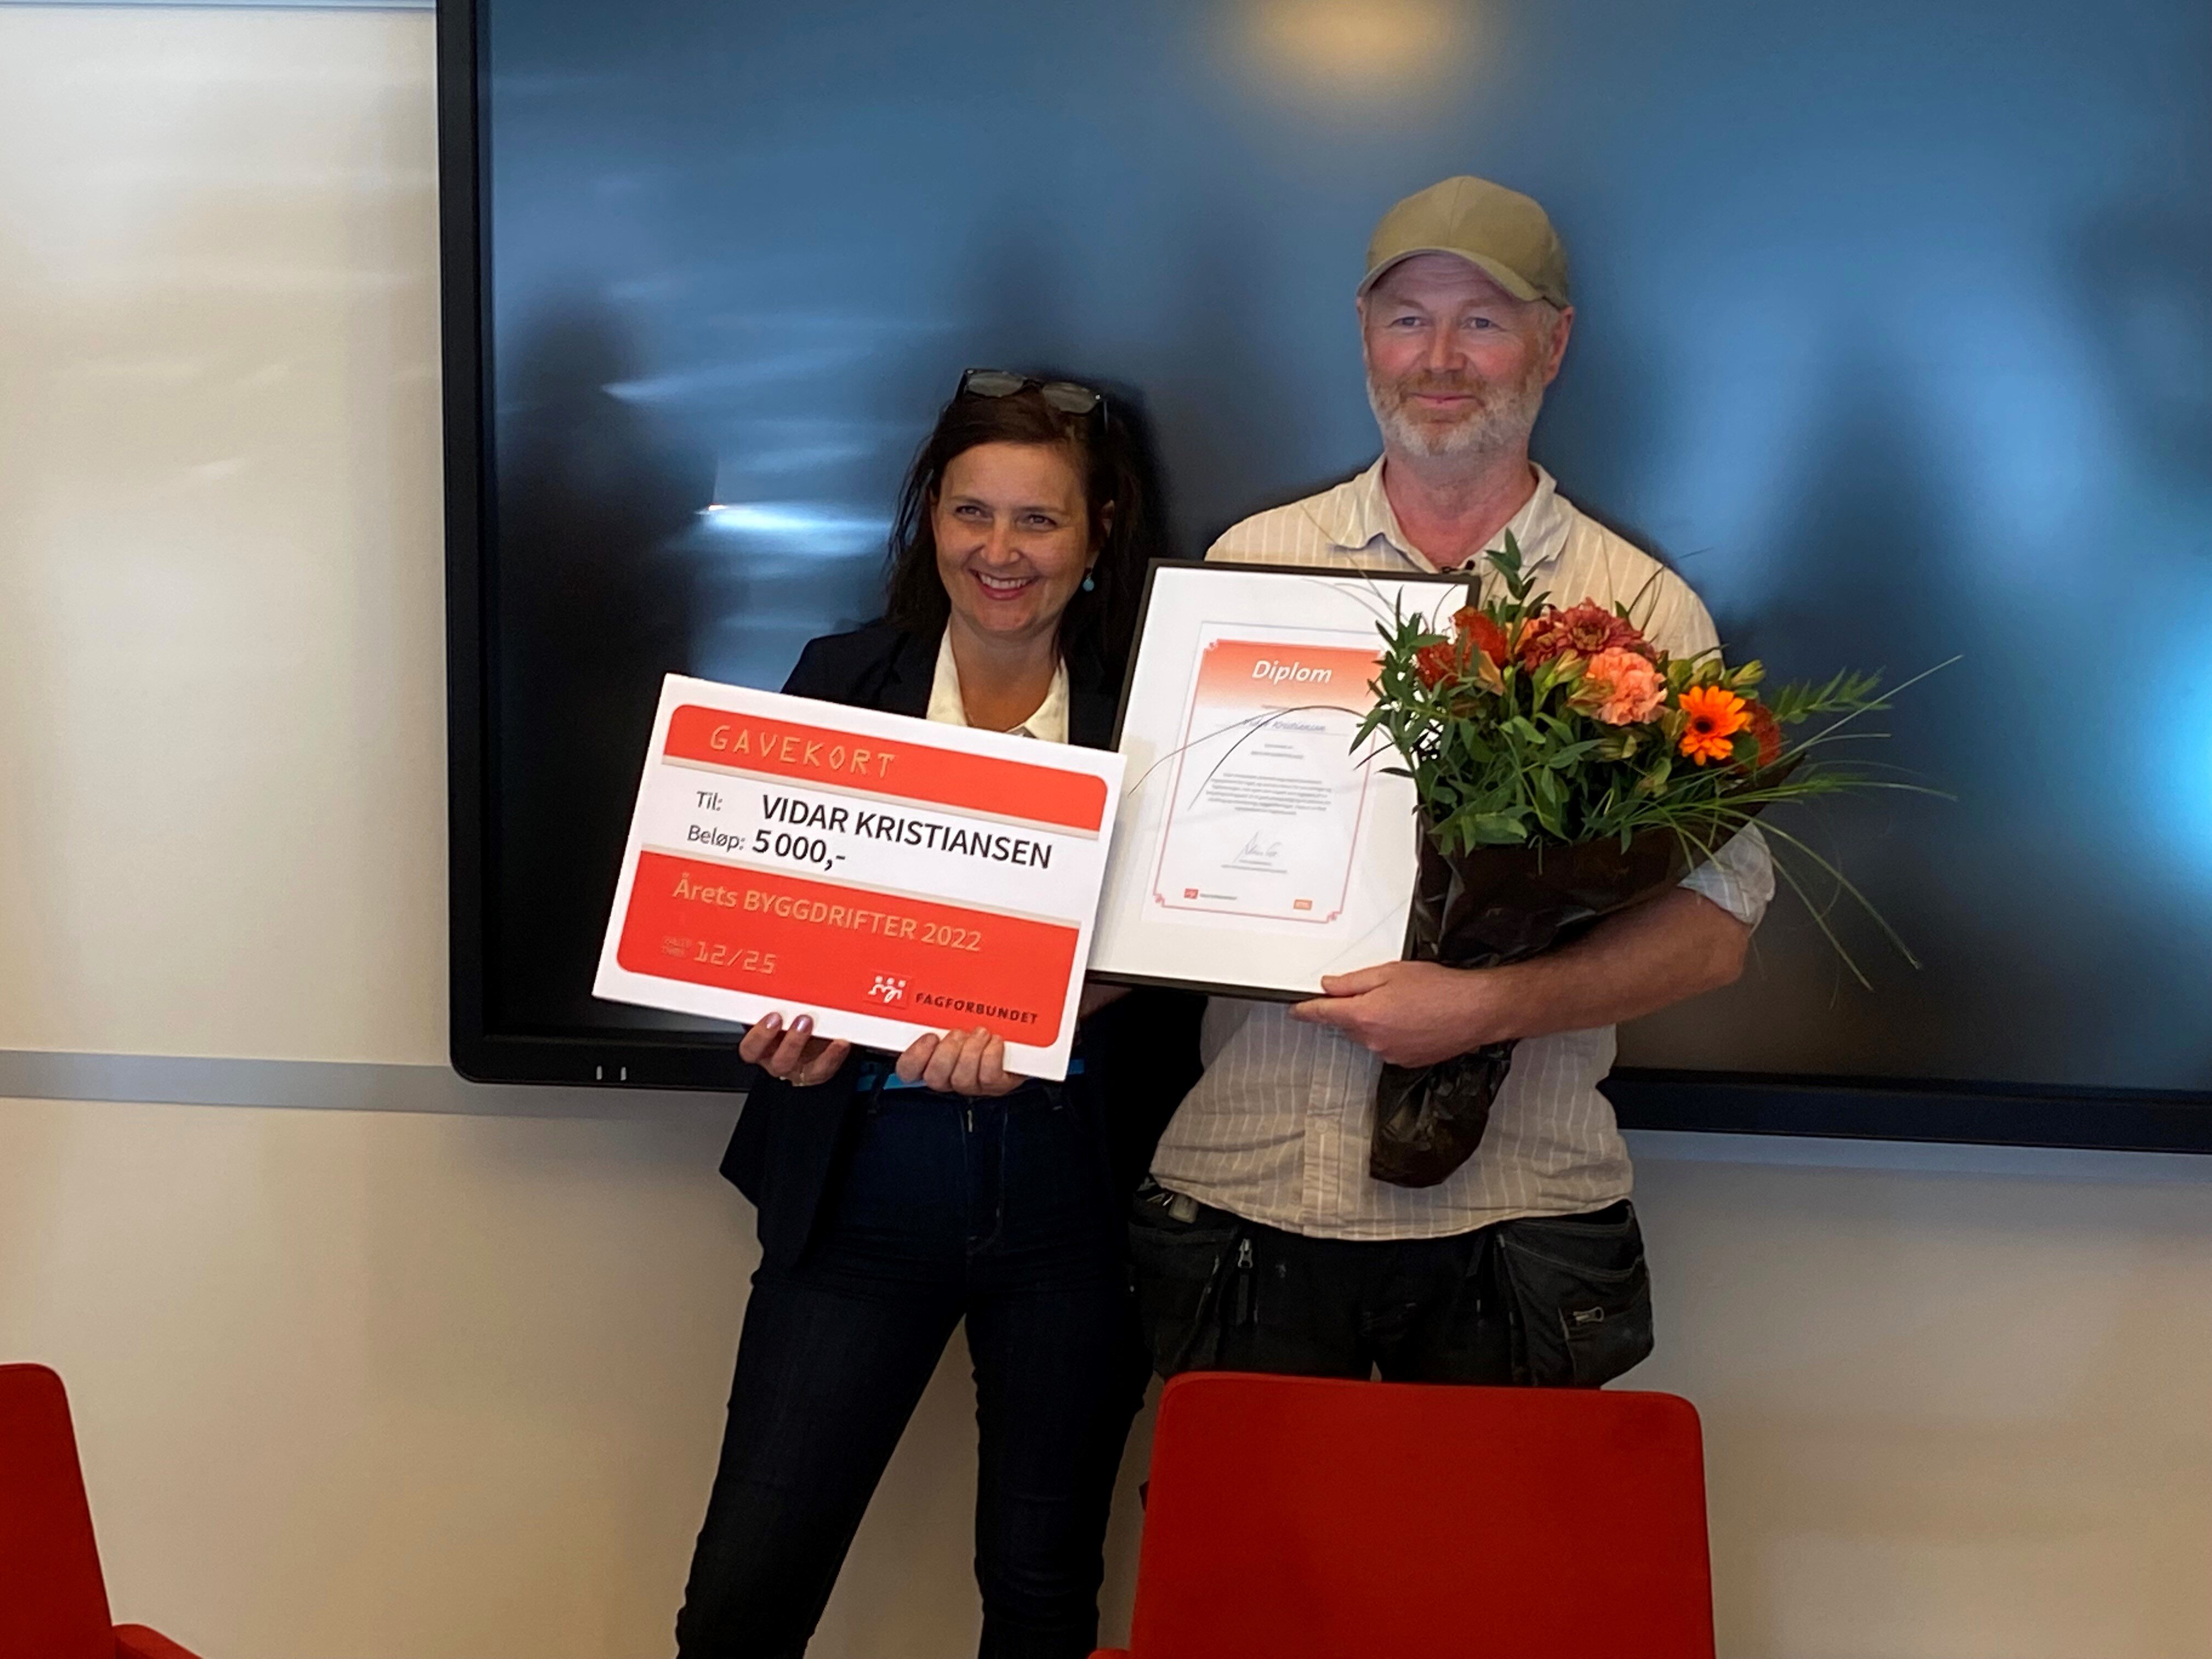 Vidar Kristiansen har her nettopp mottatt den gjeve prisen for "Årets byggdrifter" fra nestleder i Yrkesseksjon samferdsel og teknisk nasjonalt, Ingunn Reistad Jacobsen.